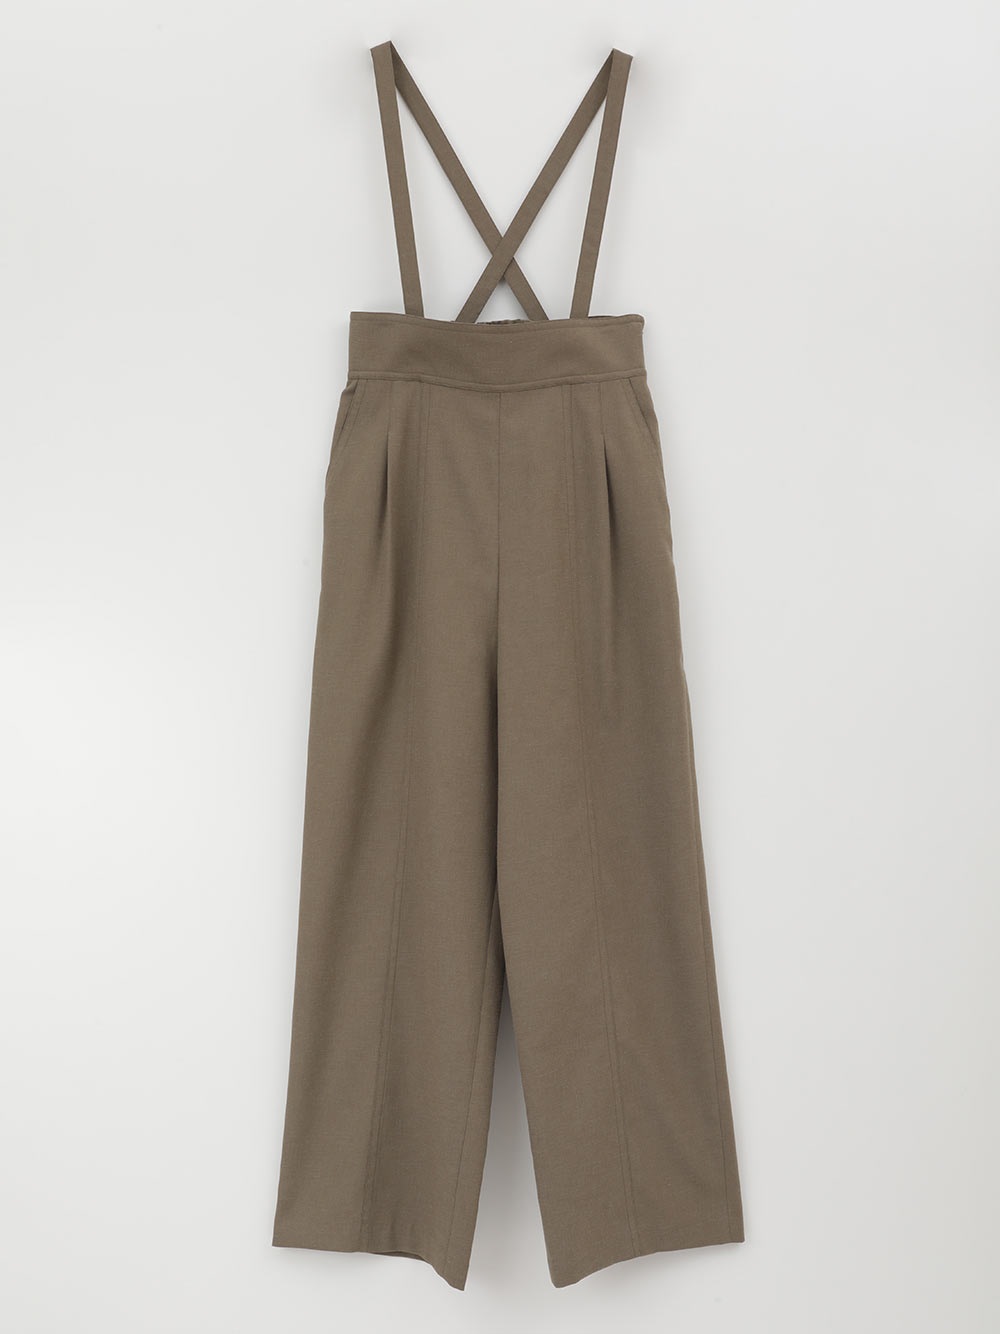 Suspender Semi Wide Pants(63カーキ-フリー)